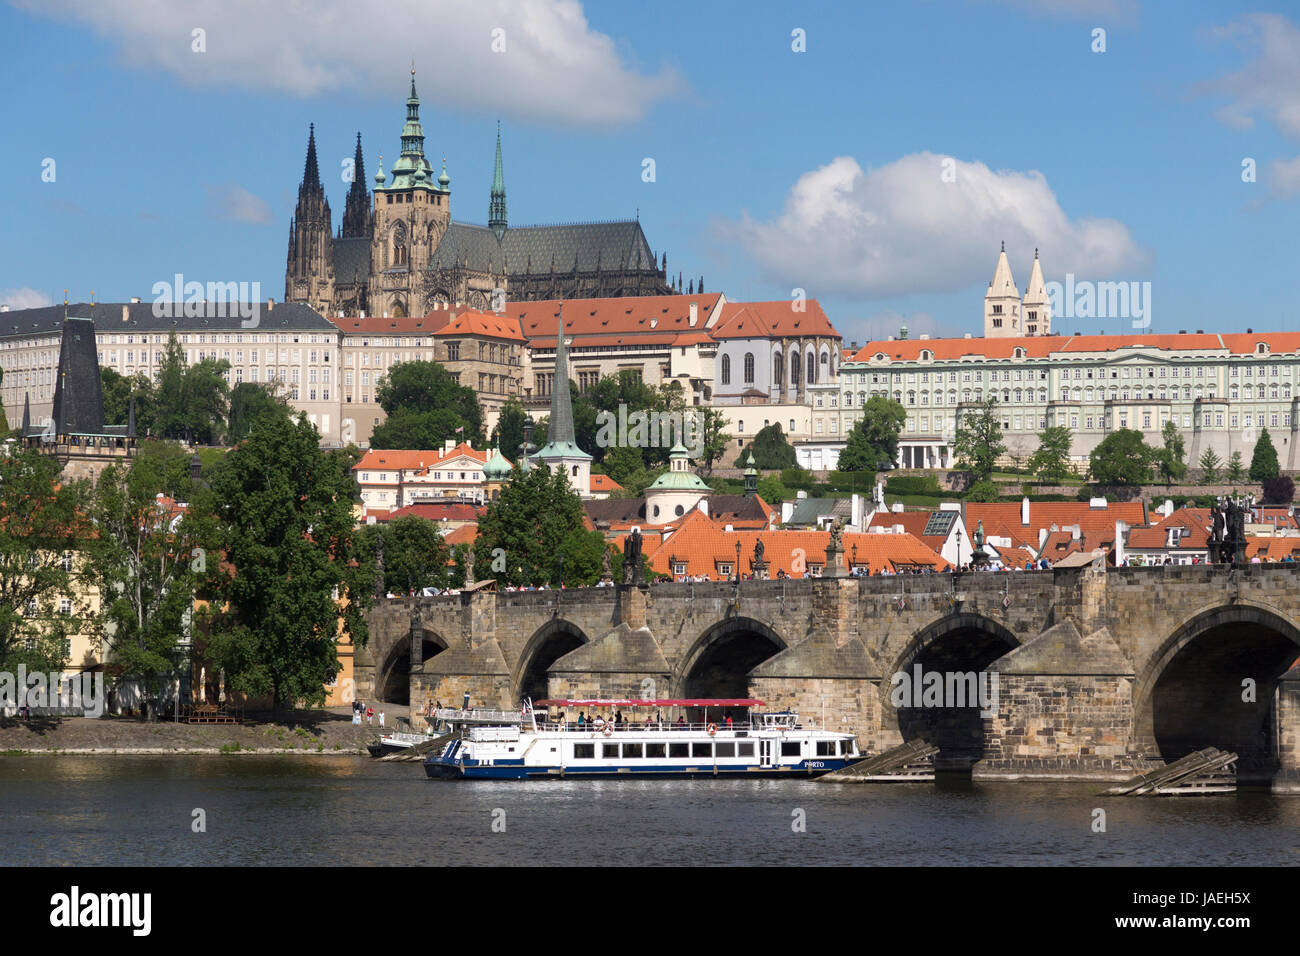 Un barco pasa bajo el Puente de Carlos con el castillo de Praga elevándose en el fondo, Praga, República Checa Foto de stock